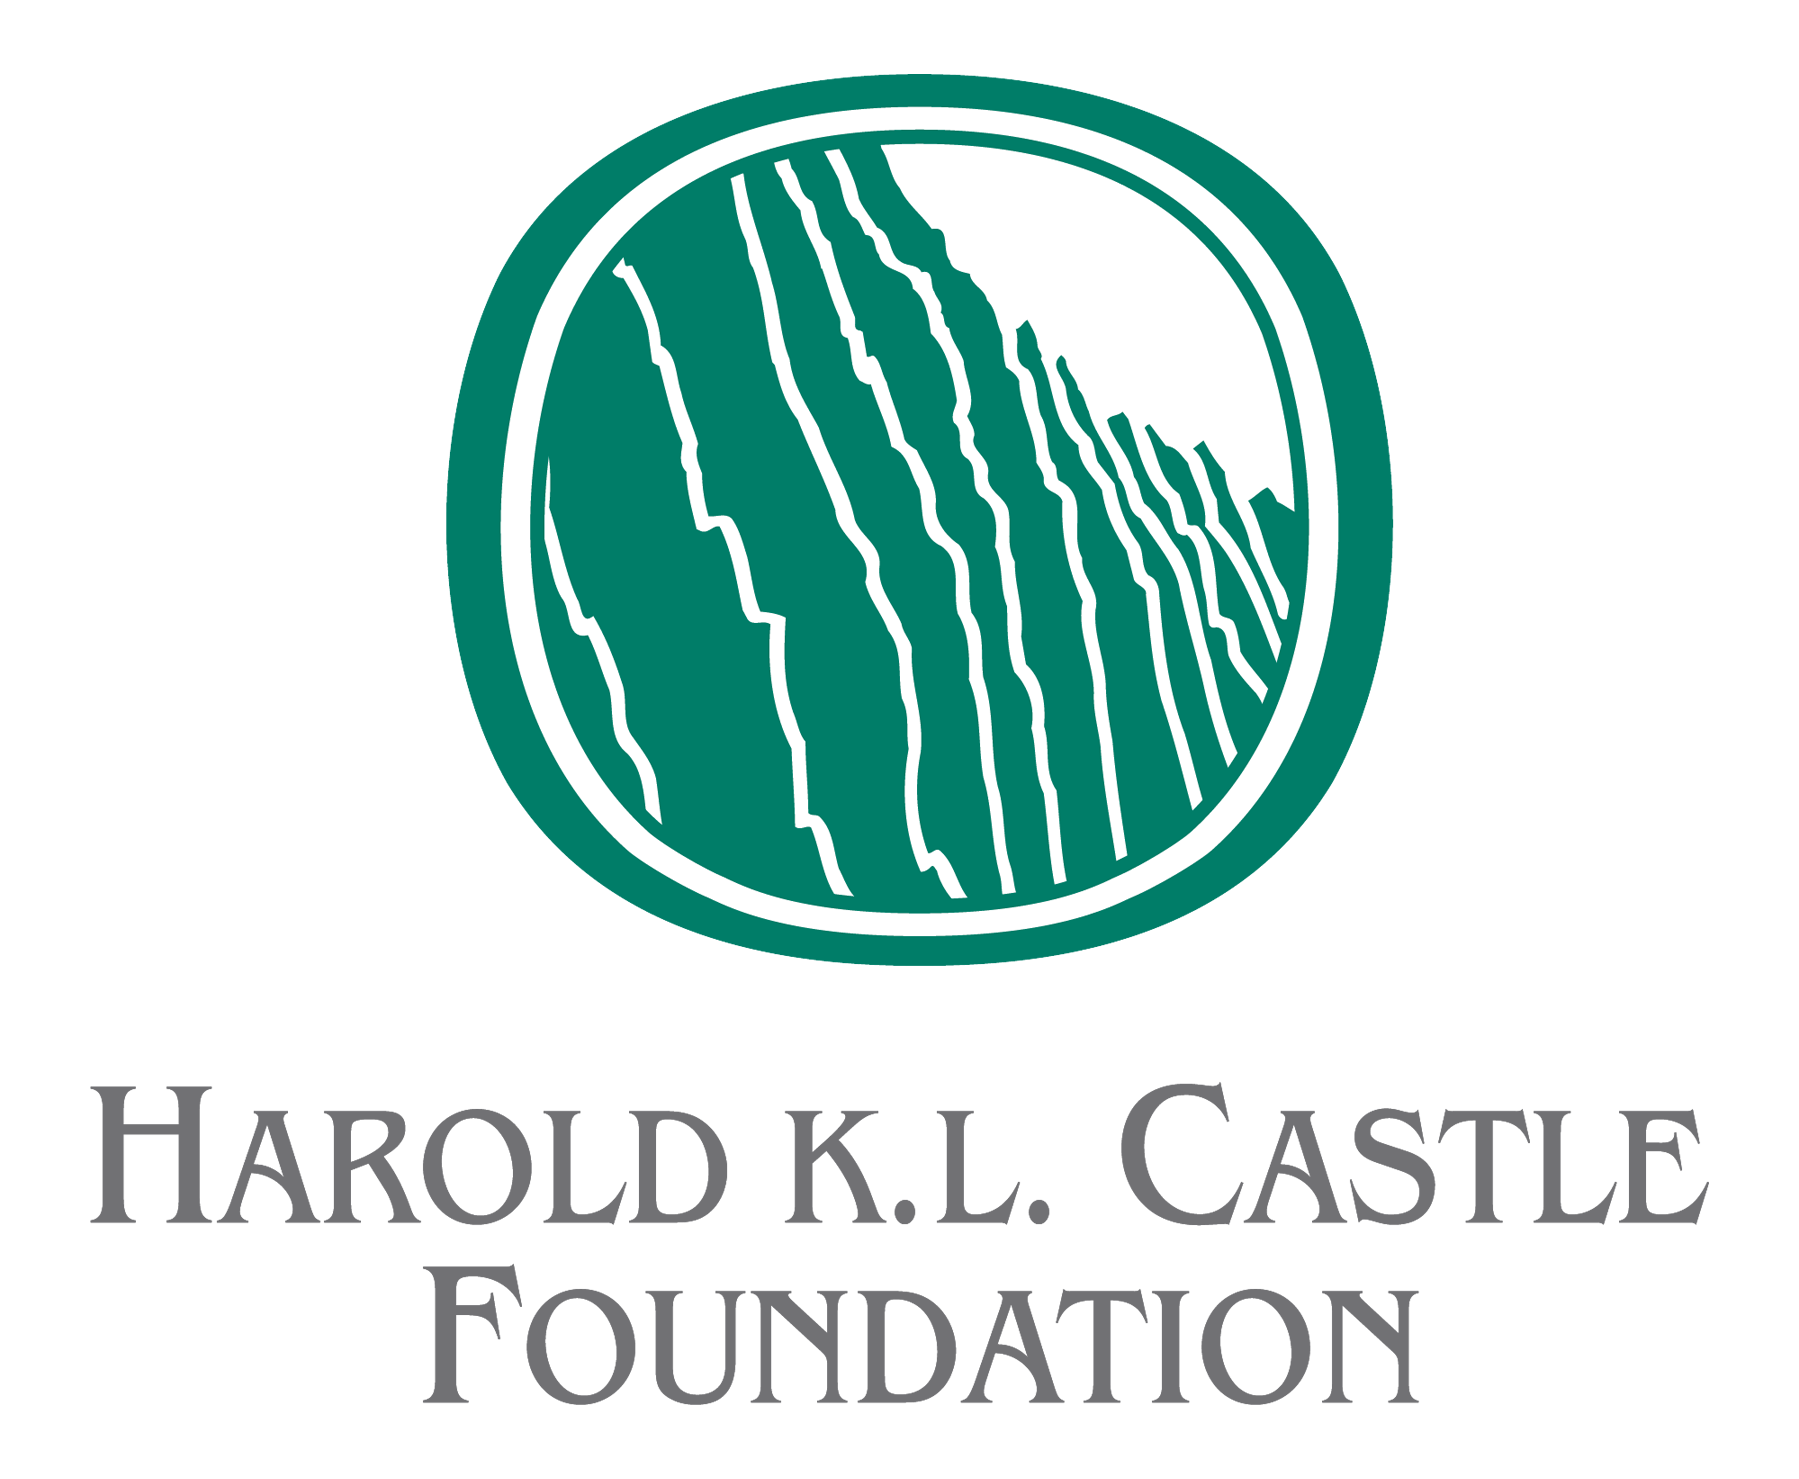 Harold K.L. Castle Foundation